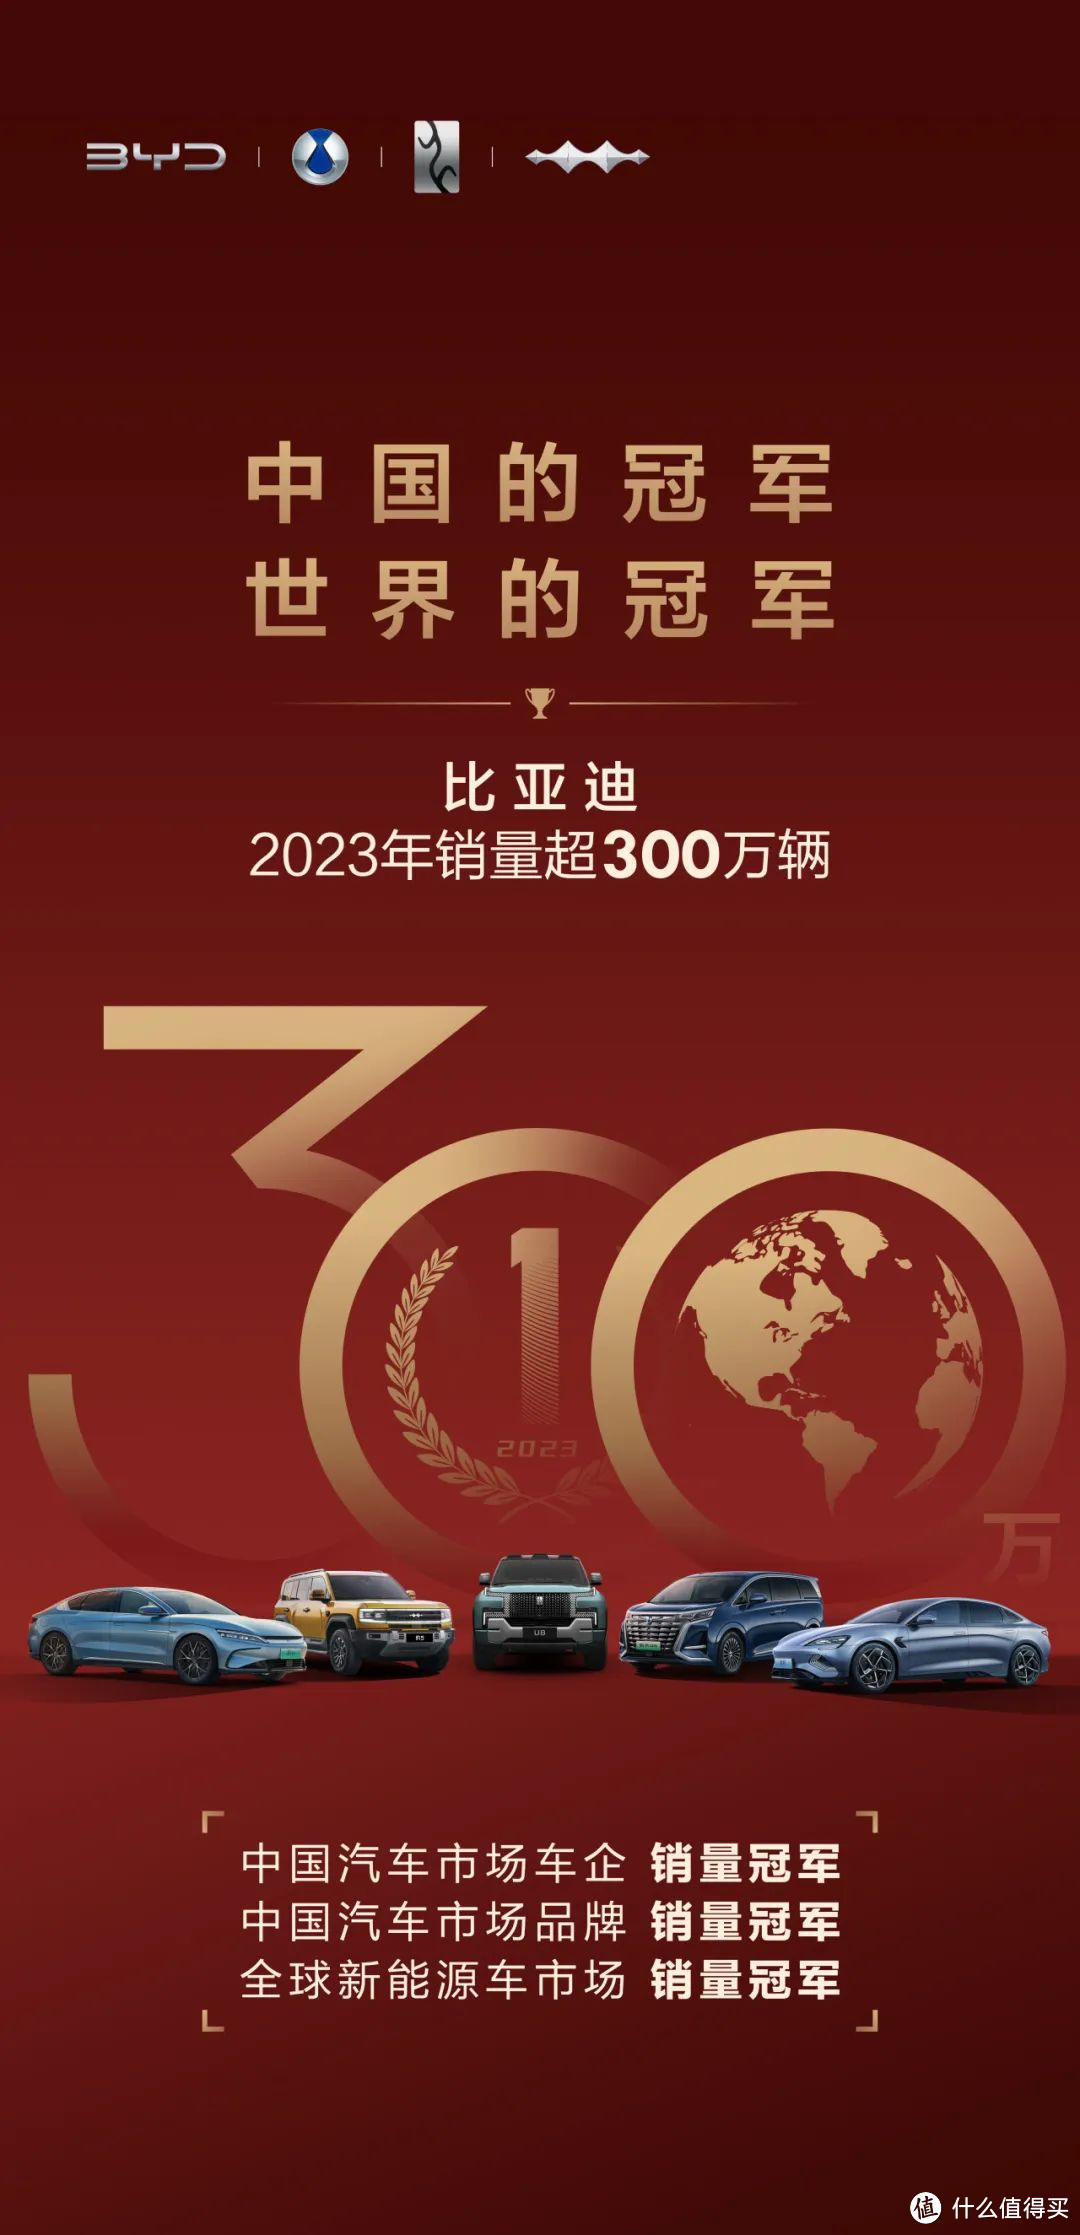 时隔39年中国车企终于夺回中国汽车市场销售冠军2023年销量达302万，比亚迪成为不加定语的销量冠军